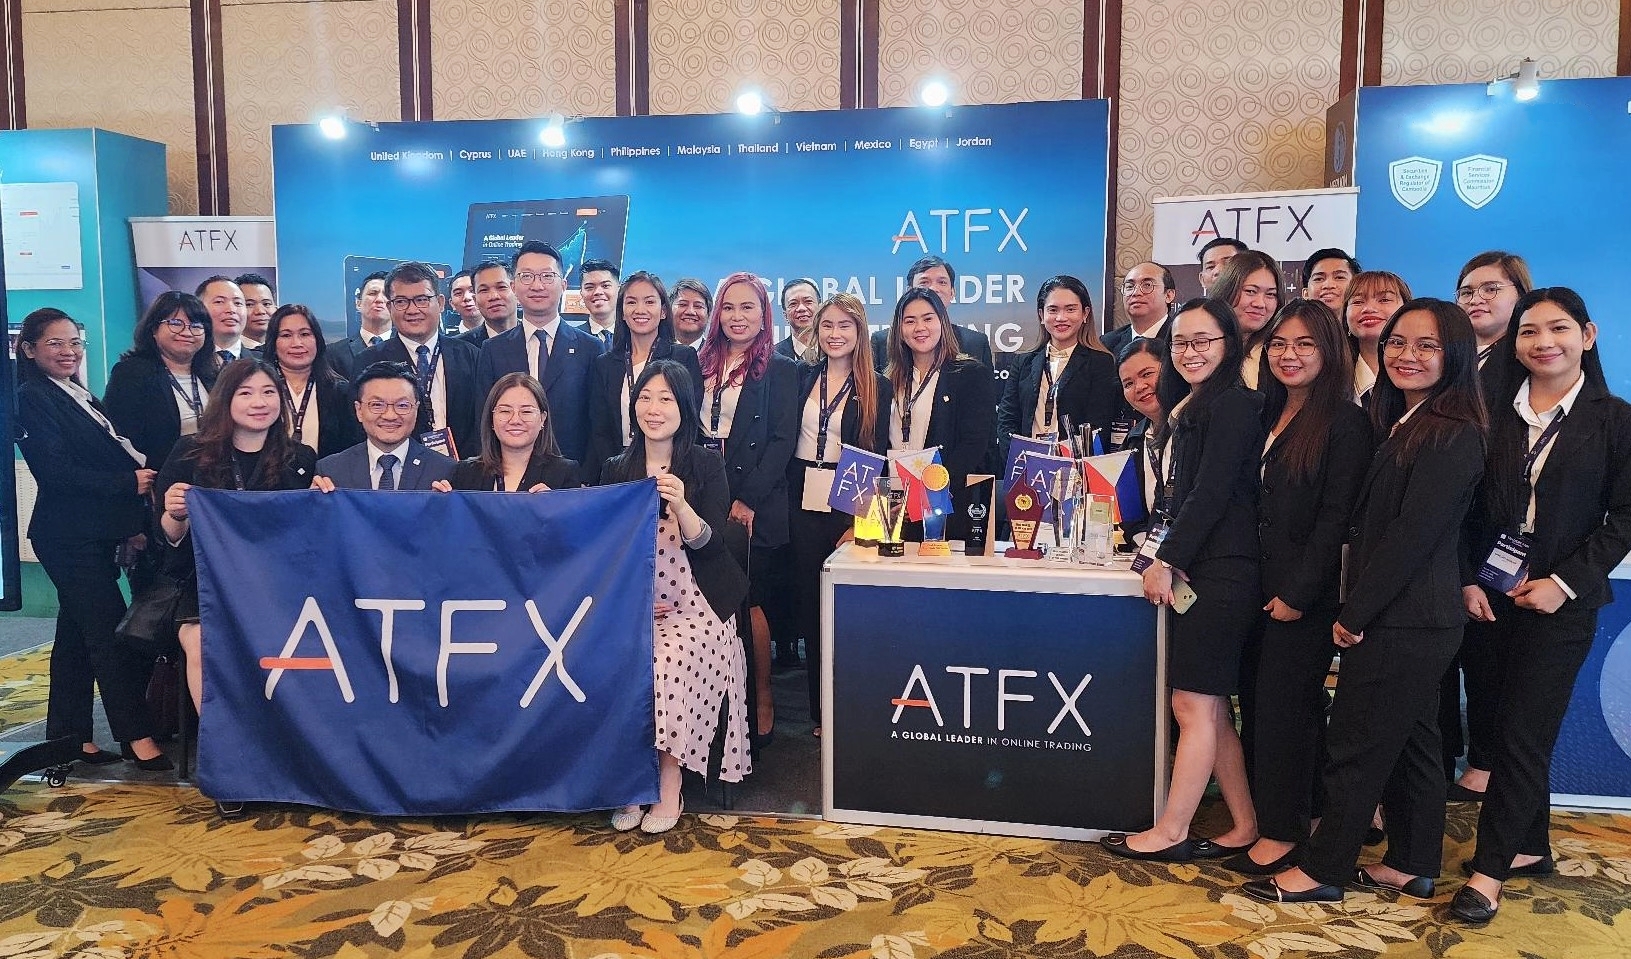 ATFX Tham gia Hội chợ Nhà giao dịch tại Philippines